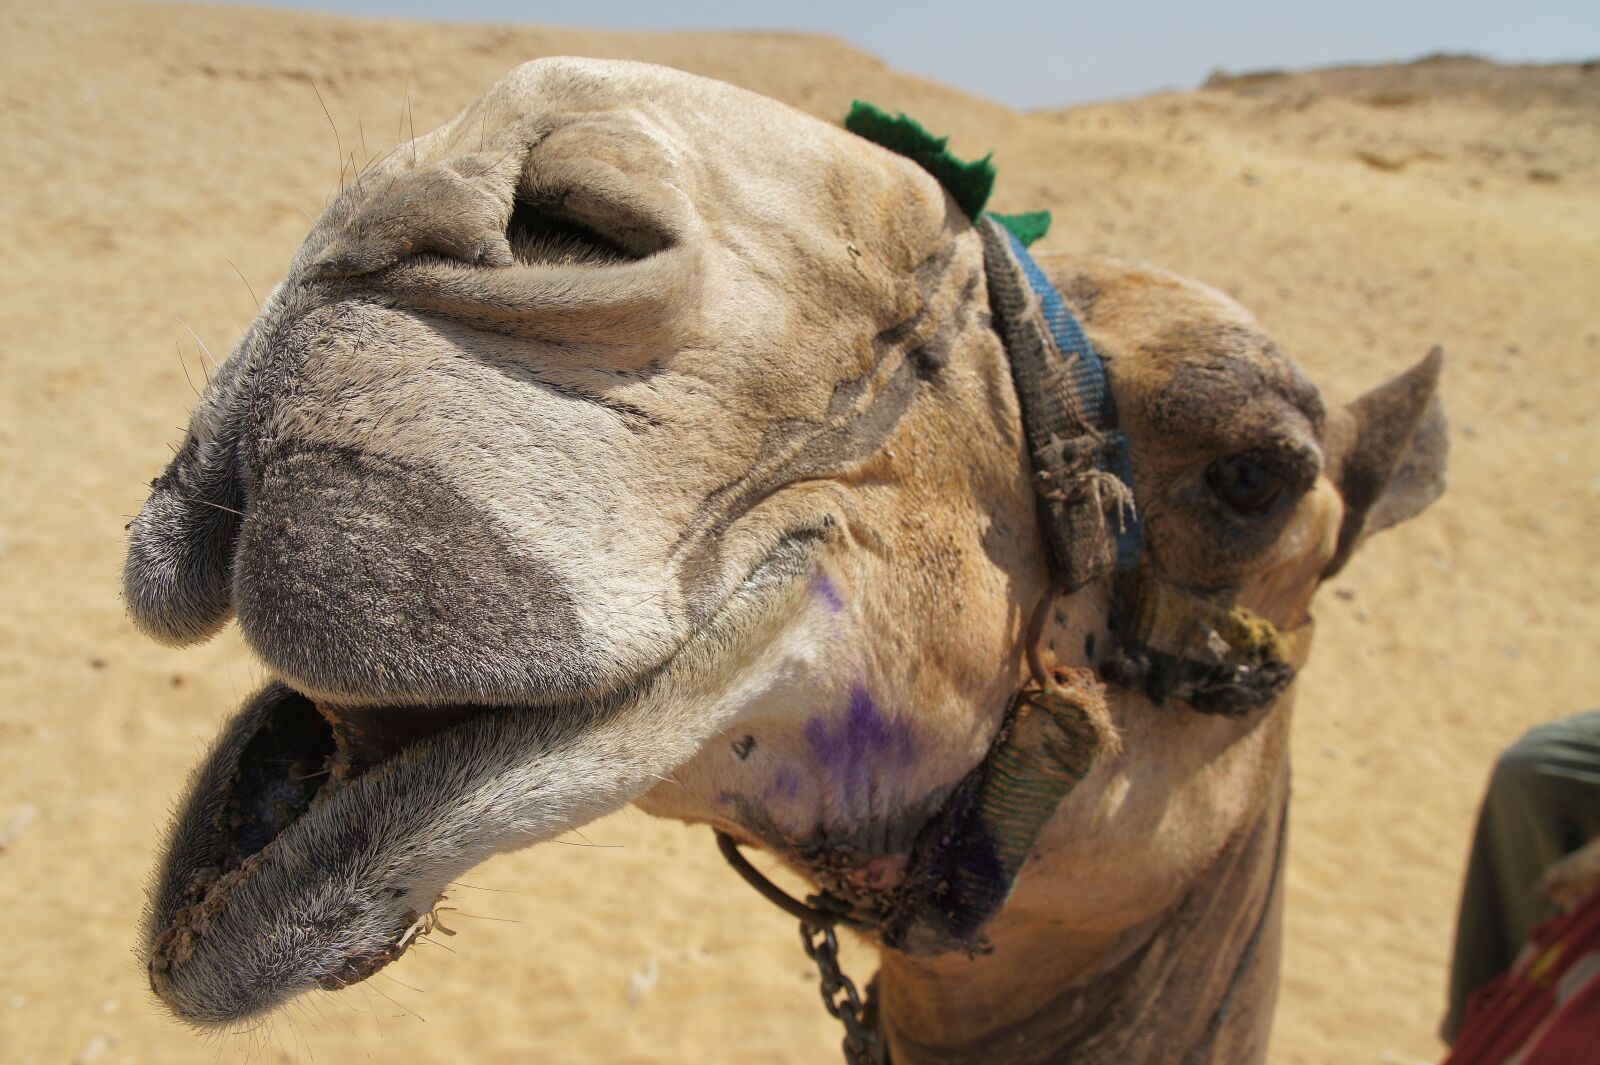 Sony Alpha NEX-5 + Sony E 18-200mm F3.5-6.3 OSS sample photo. Egypt, camel, dromedary photography